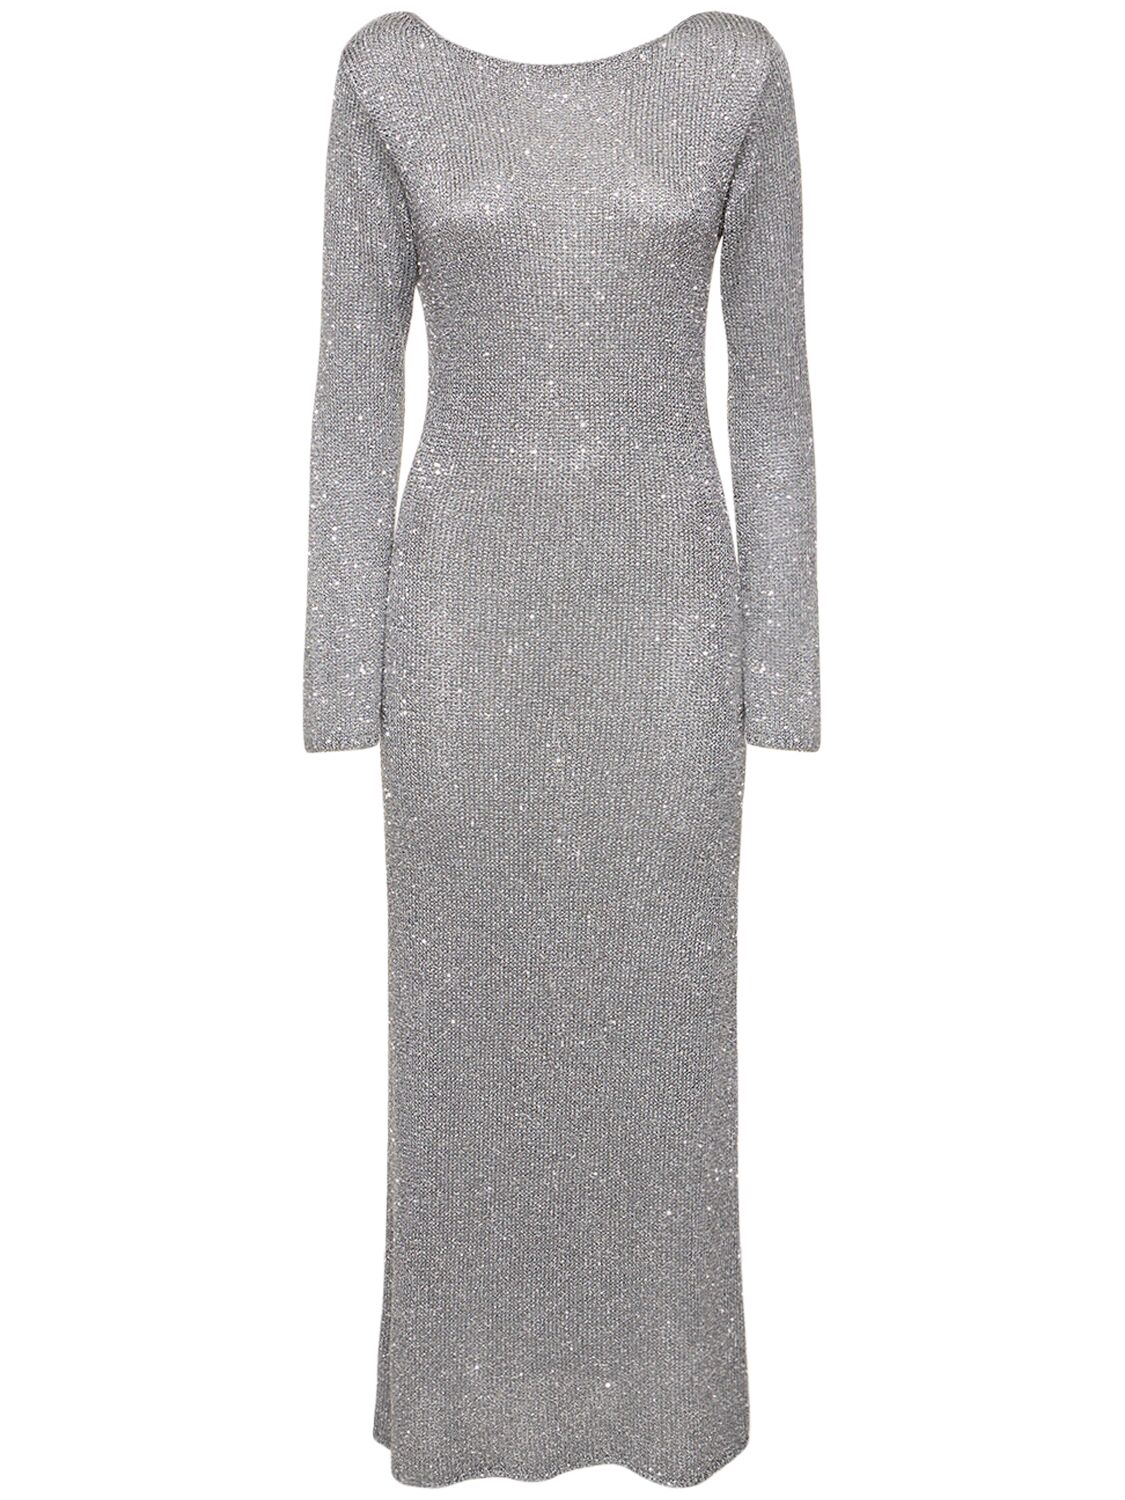 Bec & Bridge Sadie Sequined Long Sleeve Dress In Grey